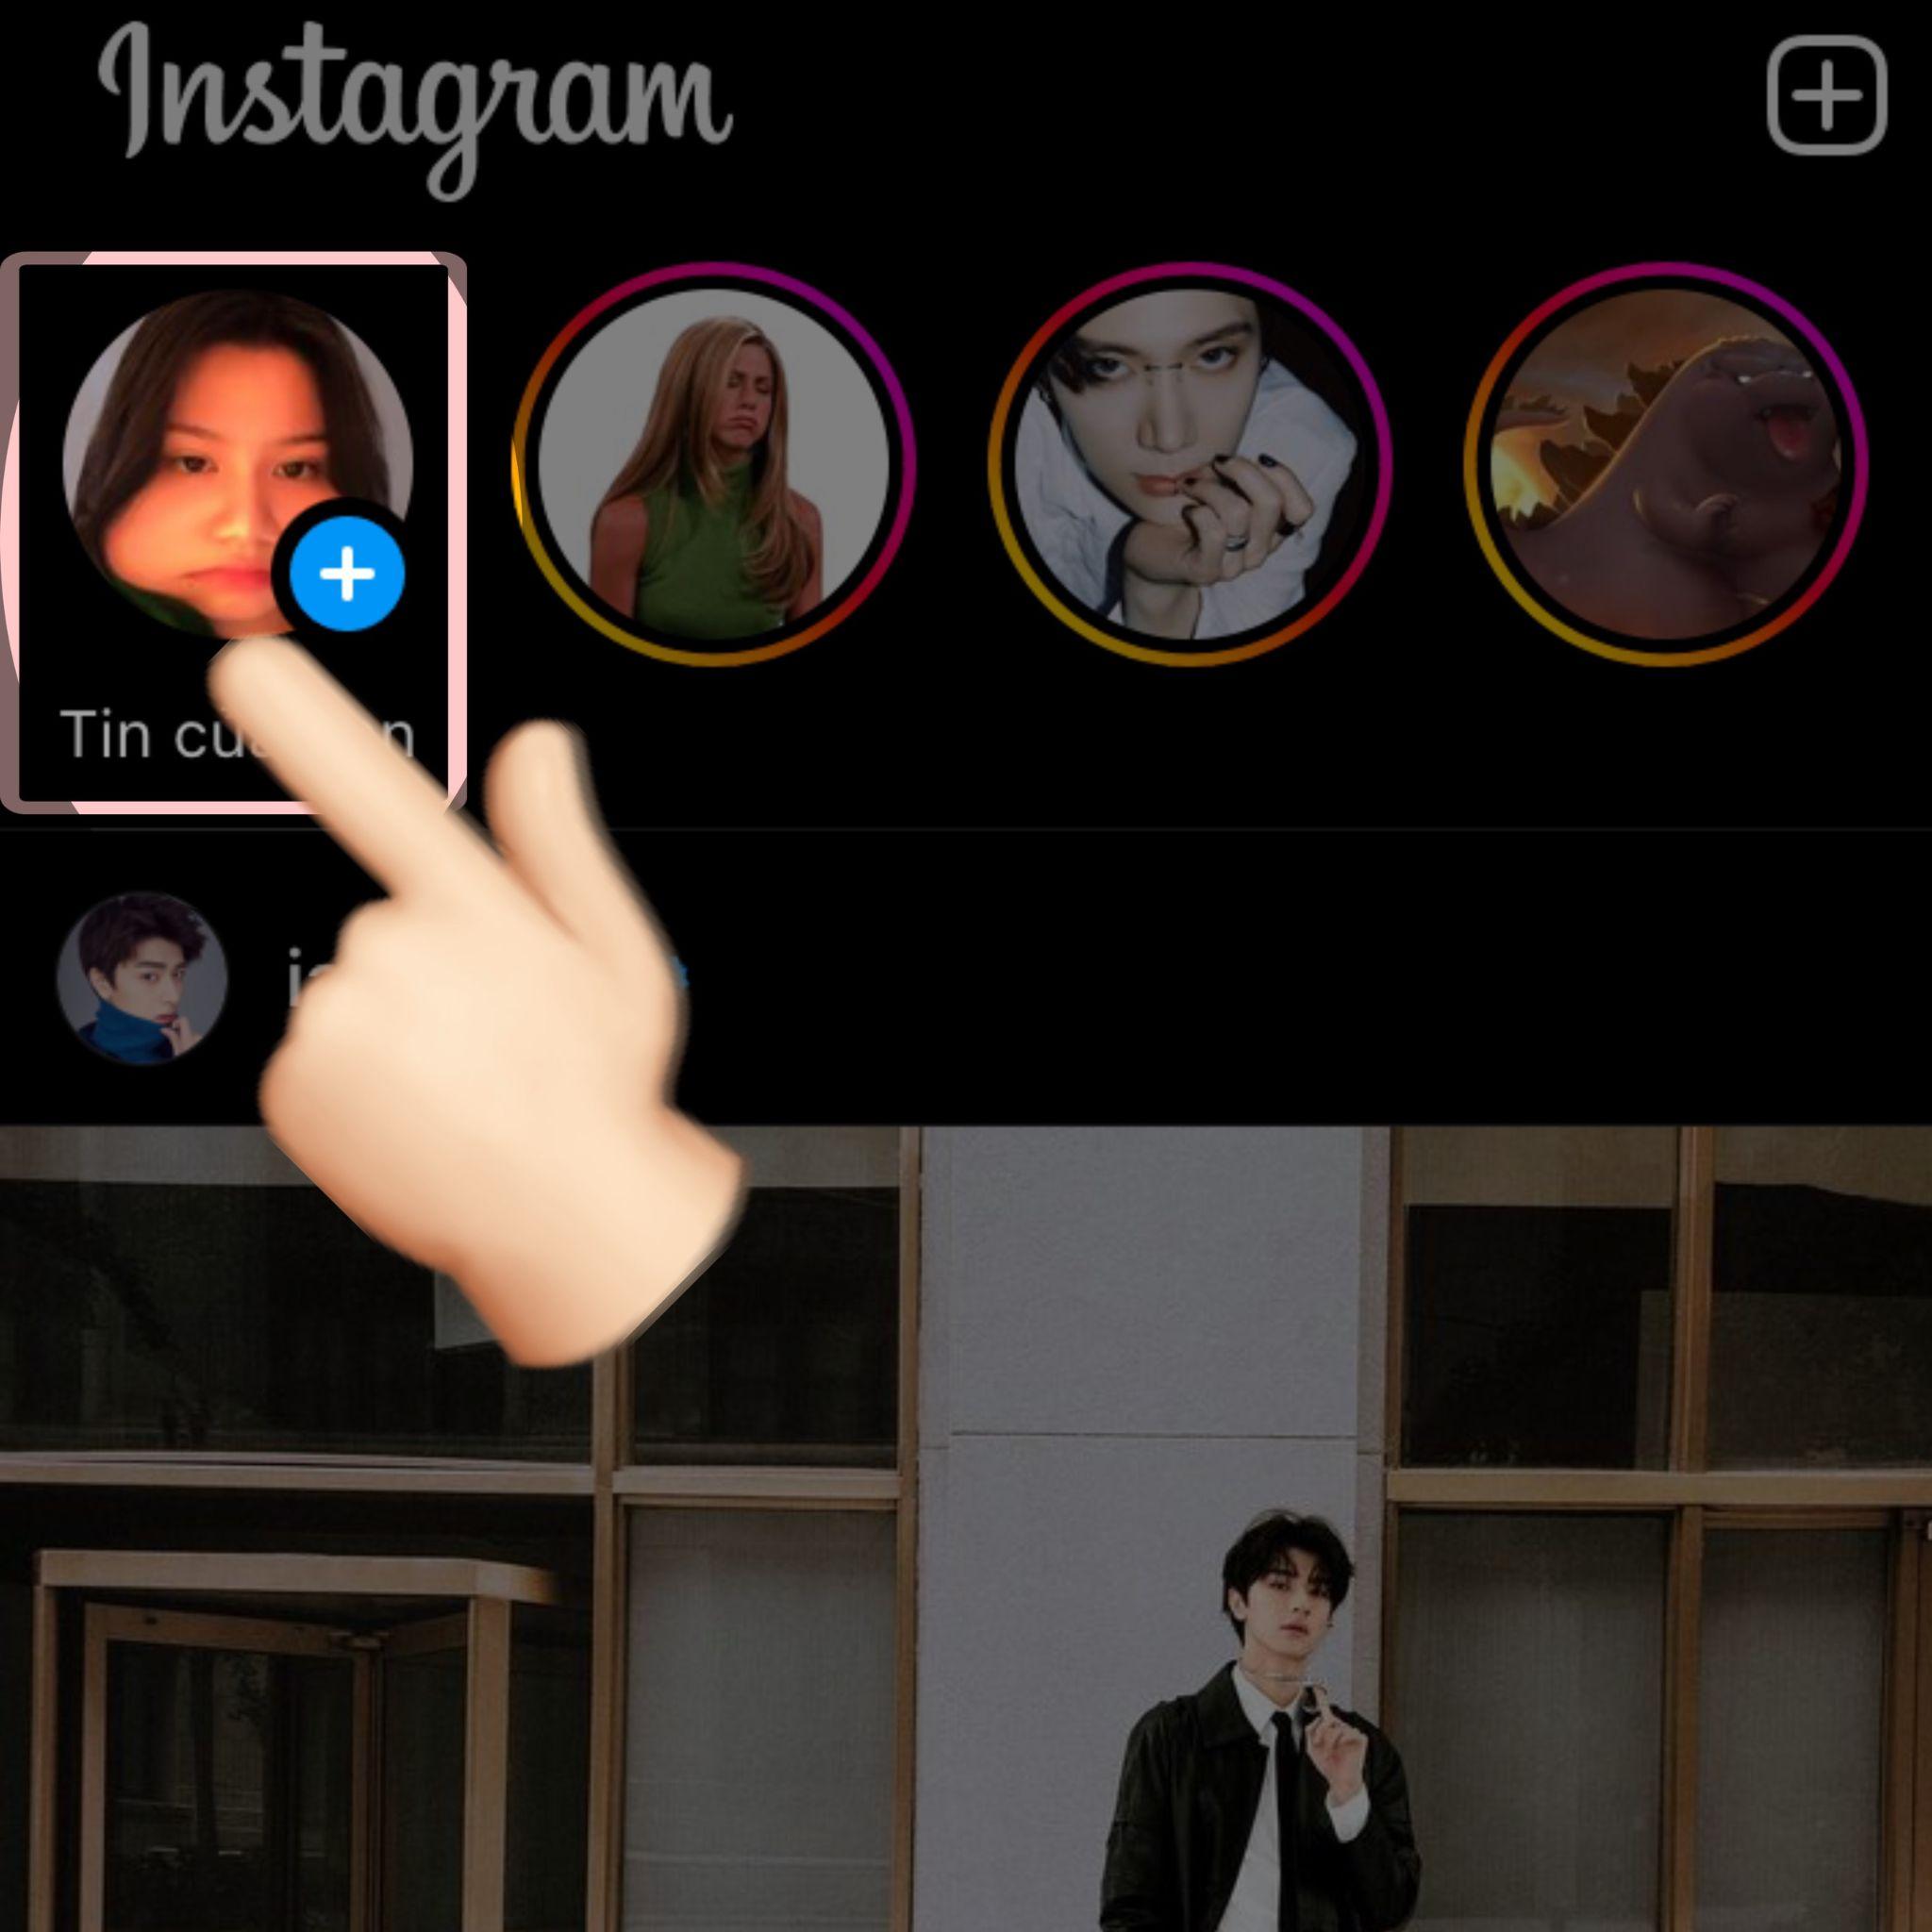 Nhấp vào “tin của bạn” ở góc trái của giao diện Instagram để mở Camera